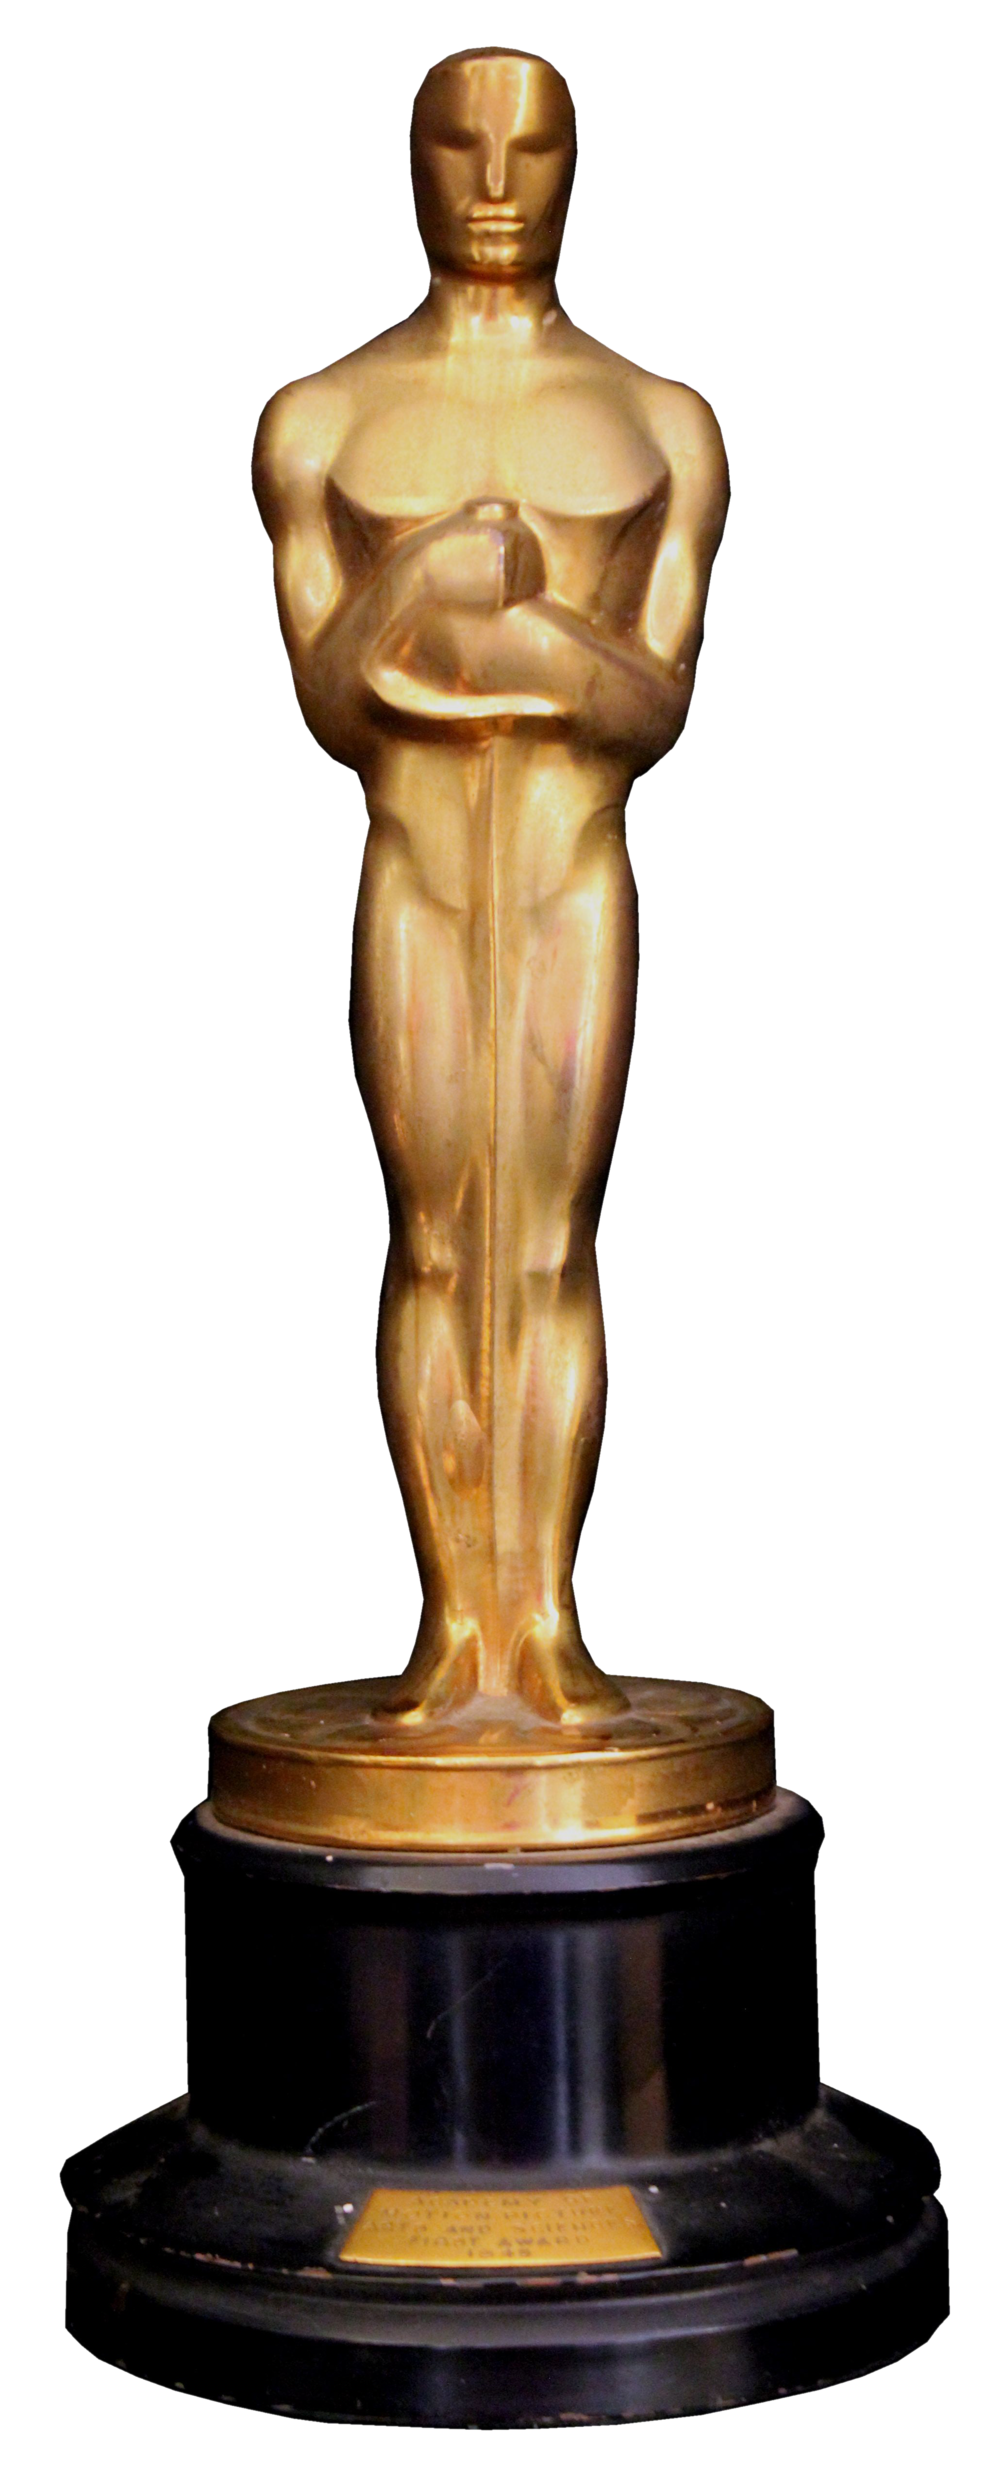 Oscar-Preis